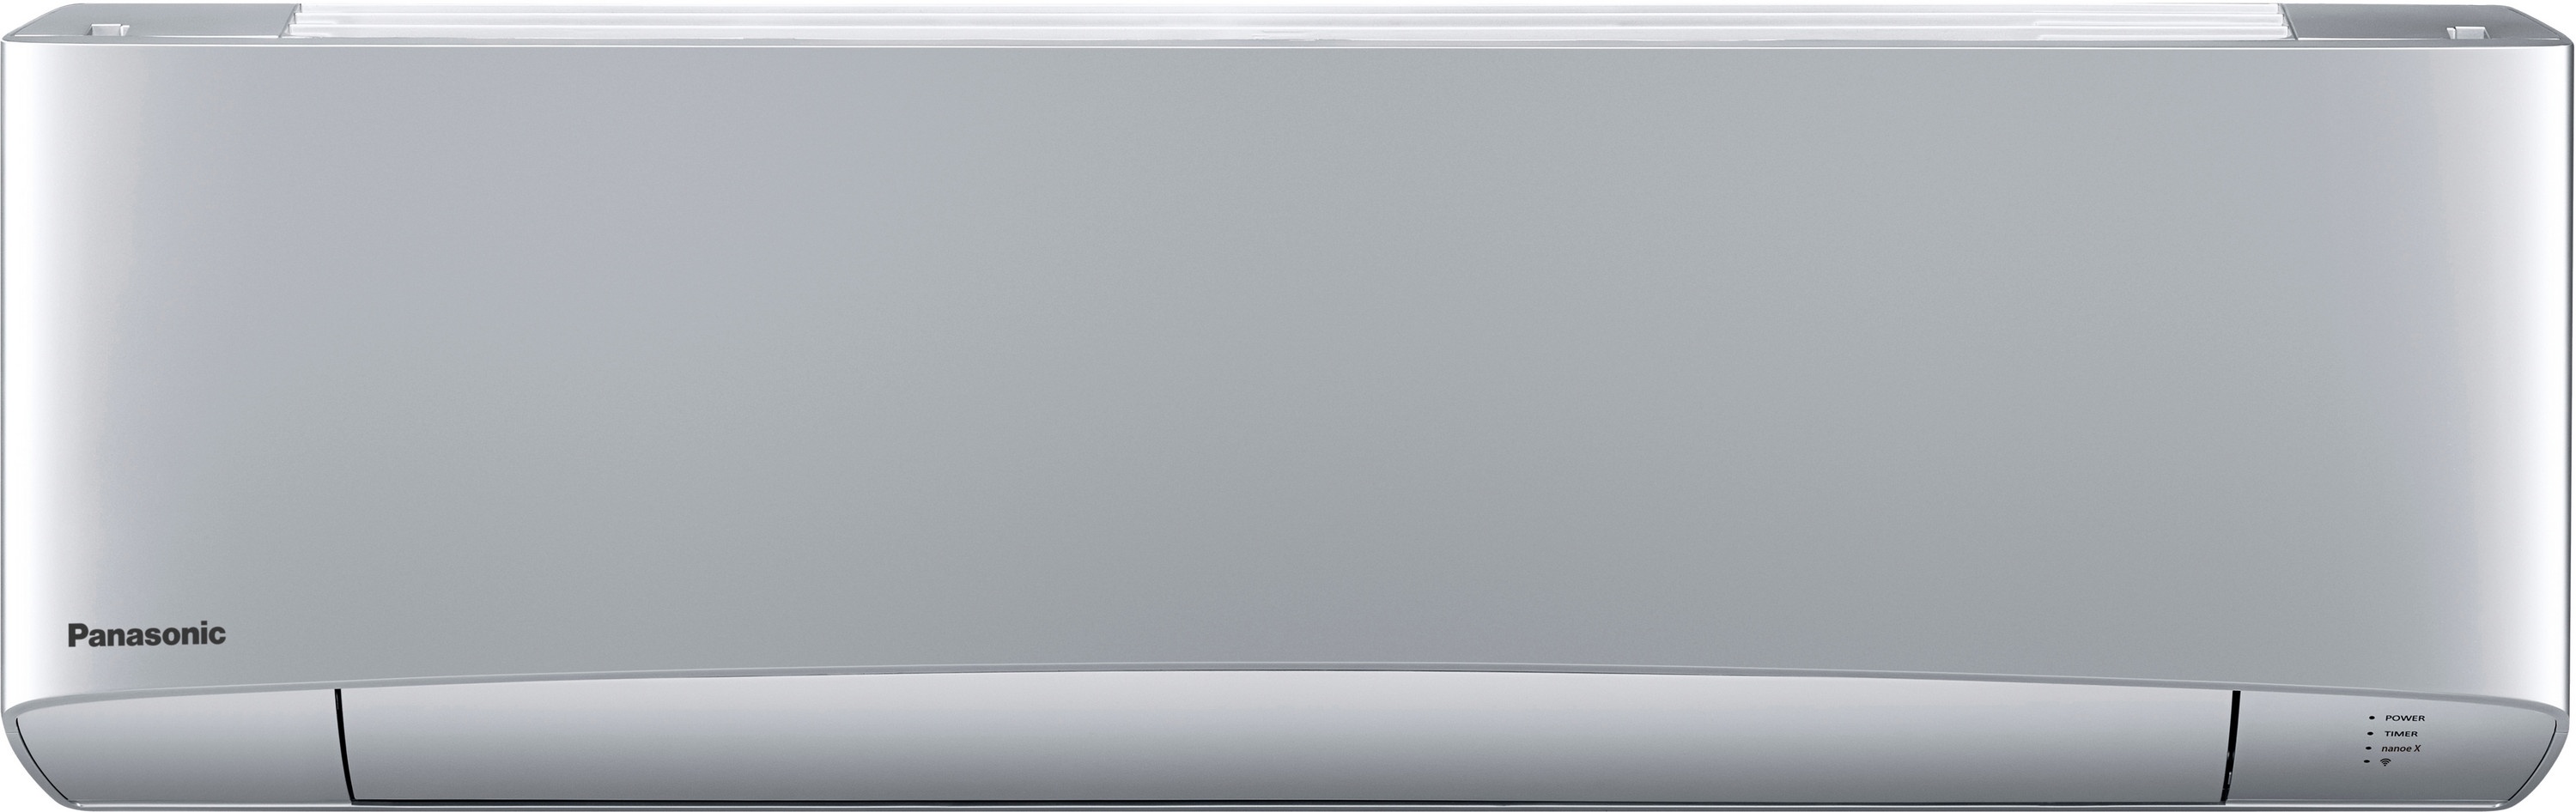 Внутренний блок мультисплит-системы Panasonic Flagship Silver CS-XZ50TKEW в интернет-магазине, главное фото